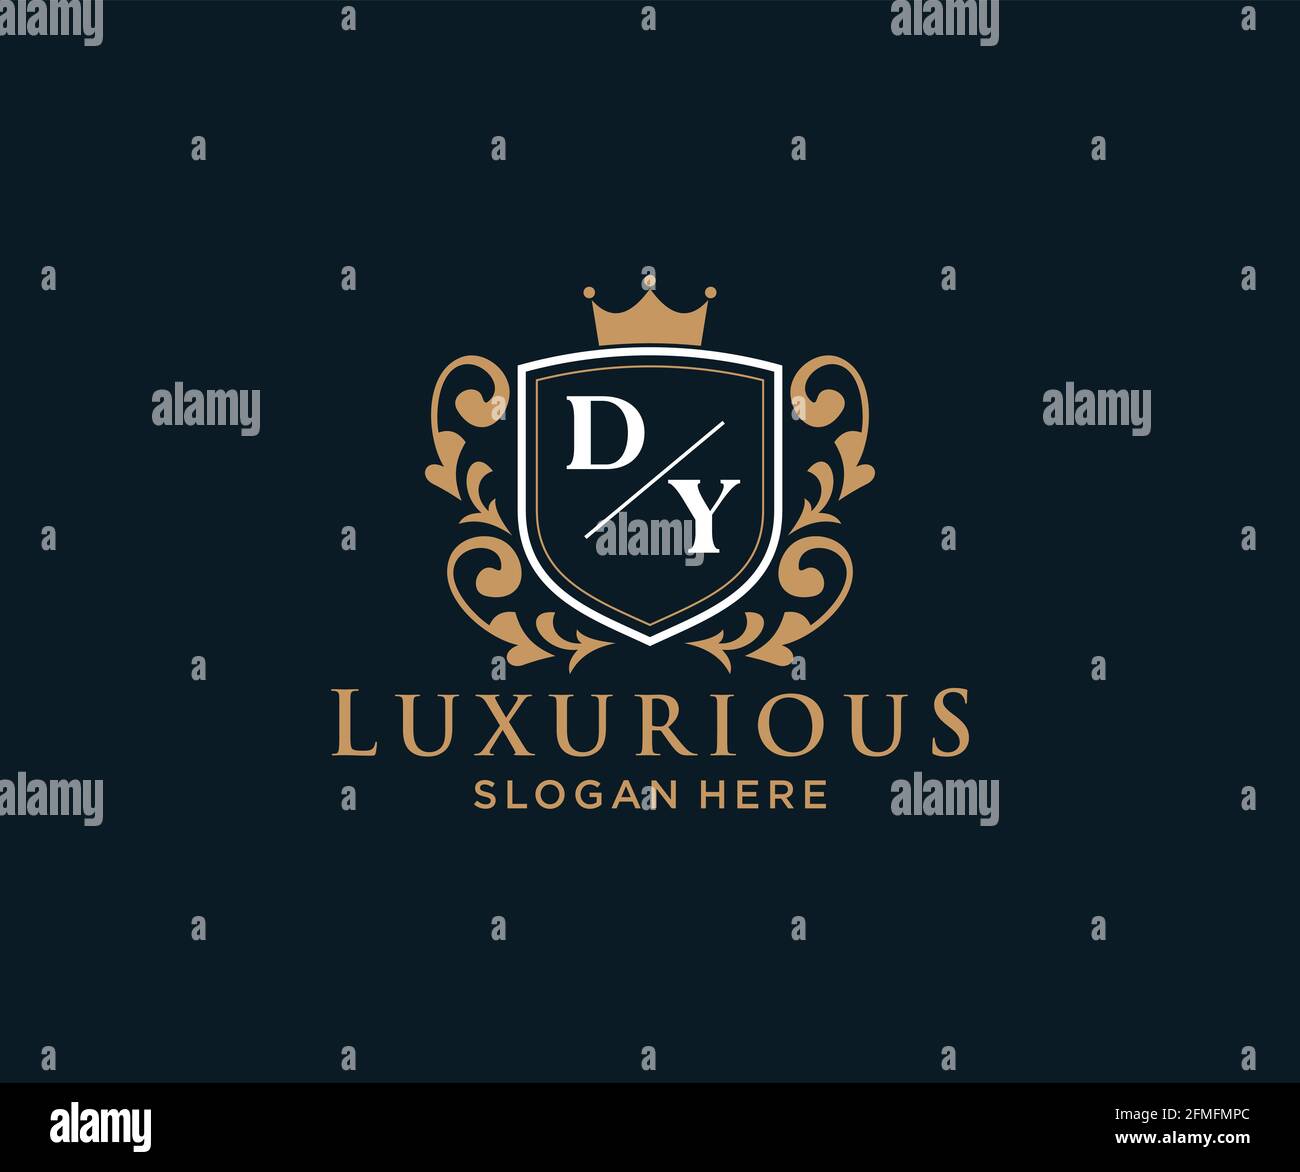 DY Letter Royal Luxury Logo Vorlage in Vektorgrafik für Restaurant, Royalty, Boutique, Cafe, Hotel, Heraldisch, Schmuck, Mode und andere Vektor illustrr Stock Vektor